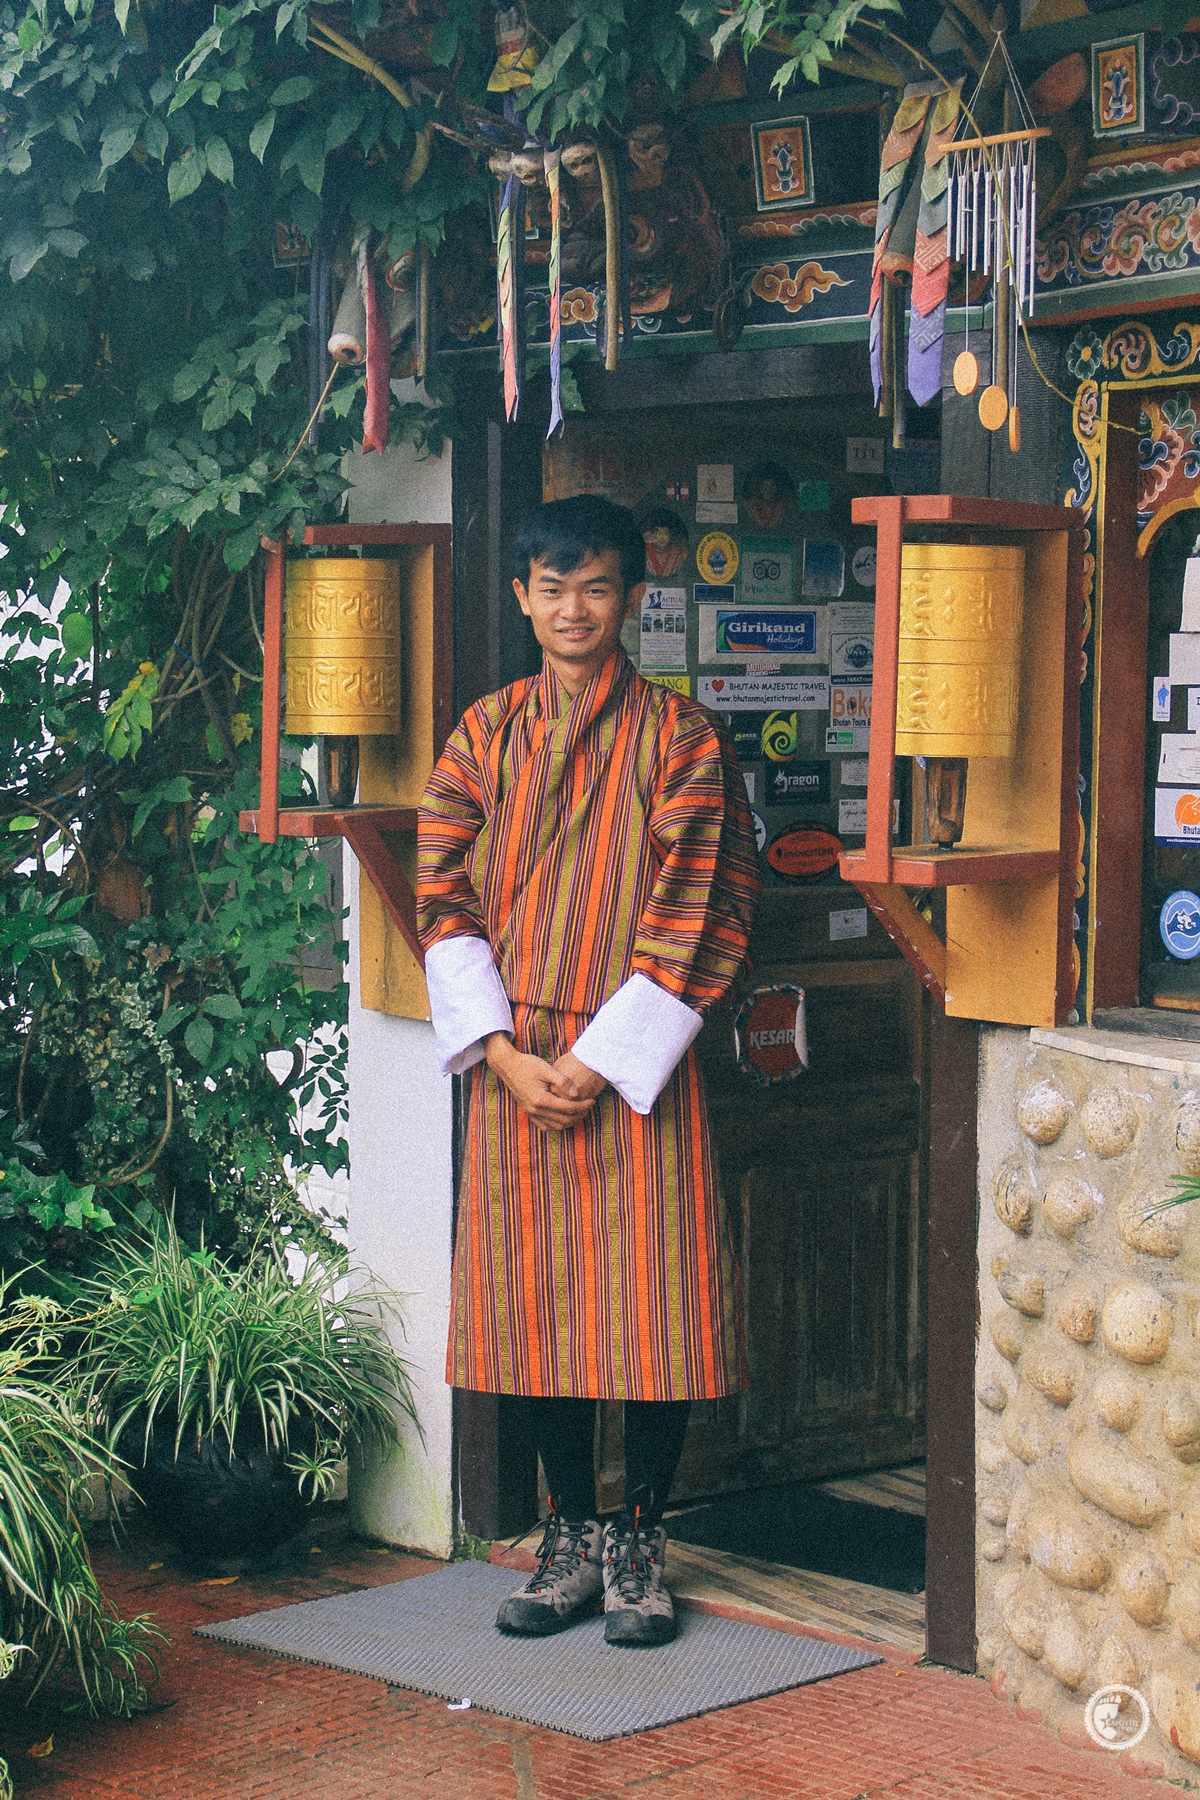 Trang phục Gho tớ mặc lên cũng giống người Bhutan phết